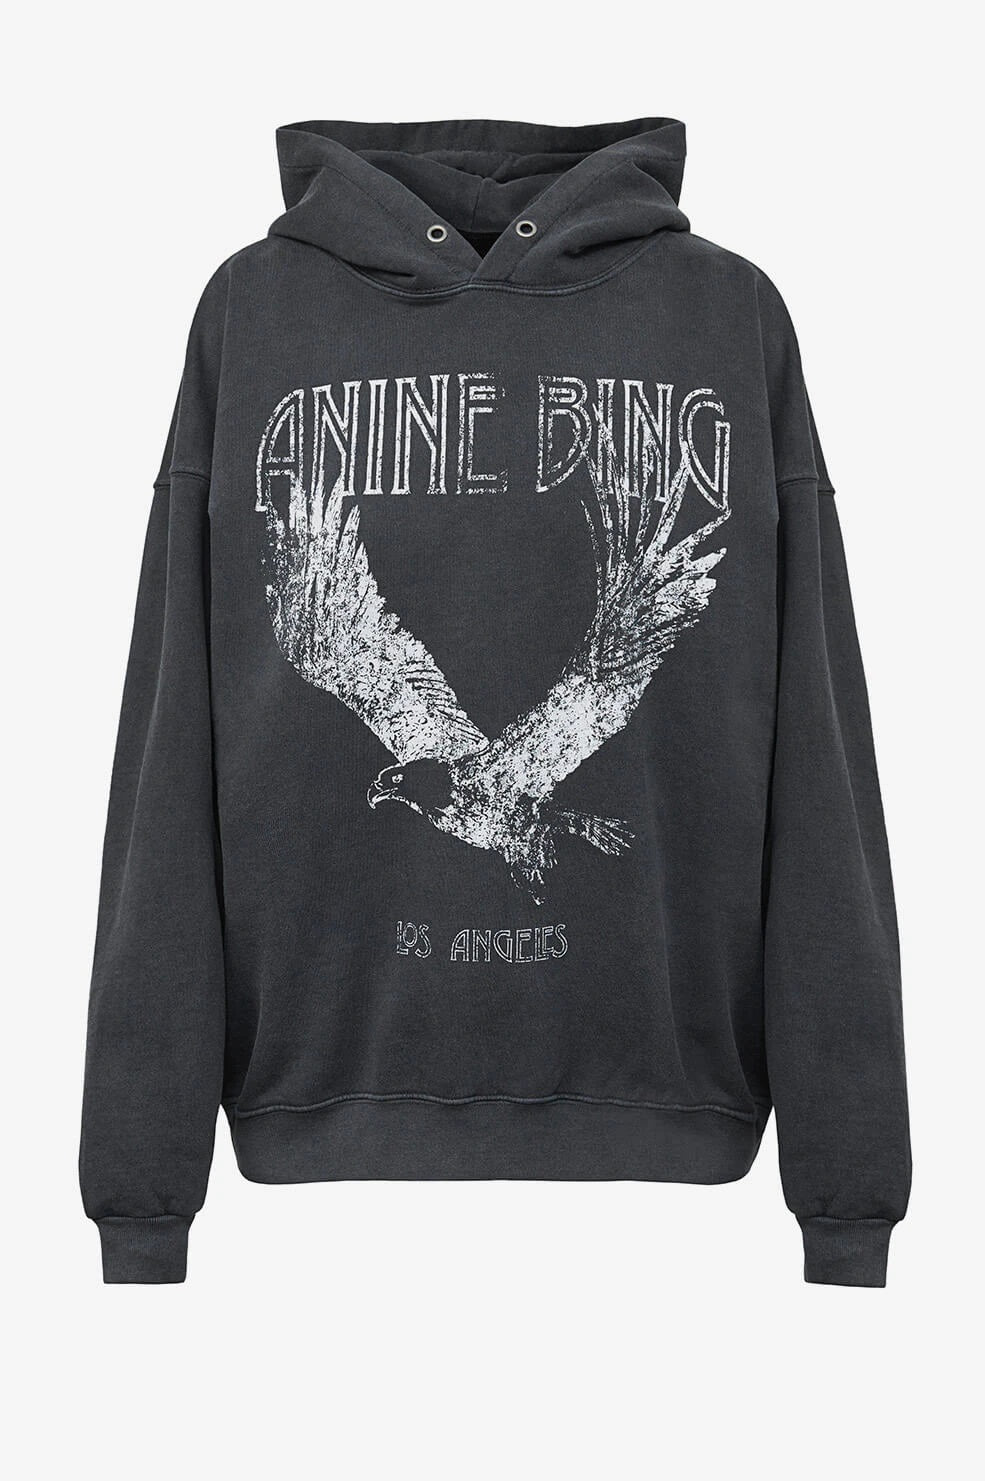 Anine Bing - Rowe Hoodie Eagle in Washed Black – Blond Genius